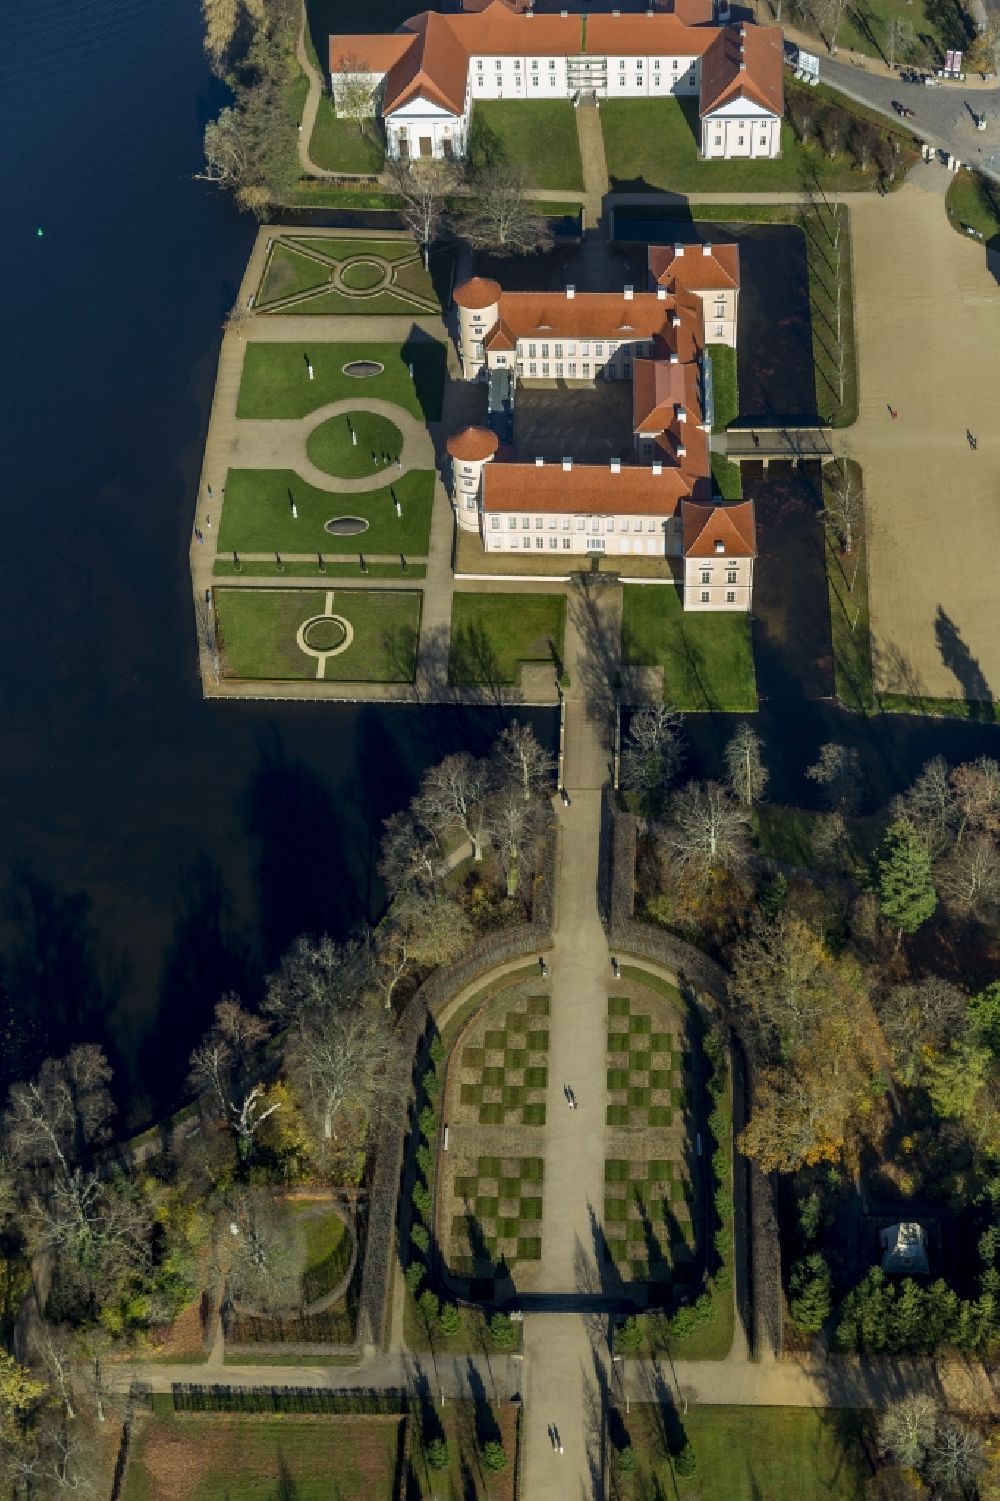 Rheinsberg von oben - Schloss Rheinsberg in der Stadt Rheinsberg am Grienericksee in Brandenburg